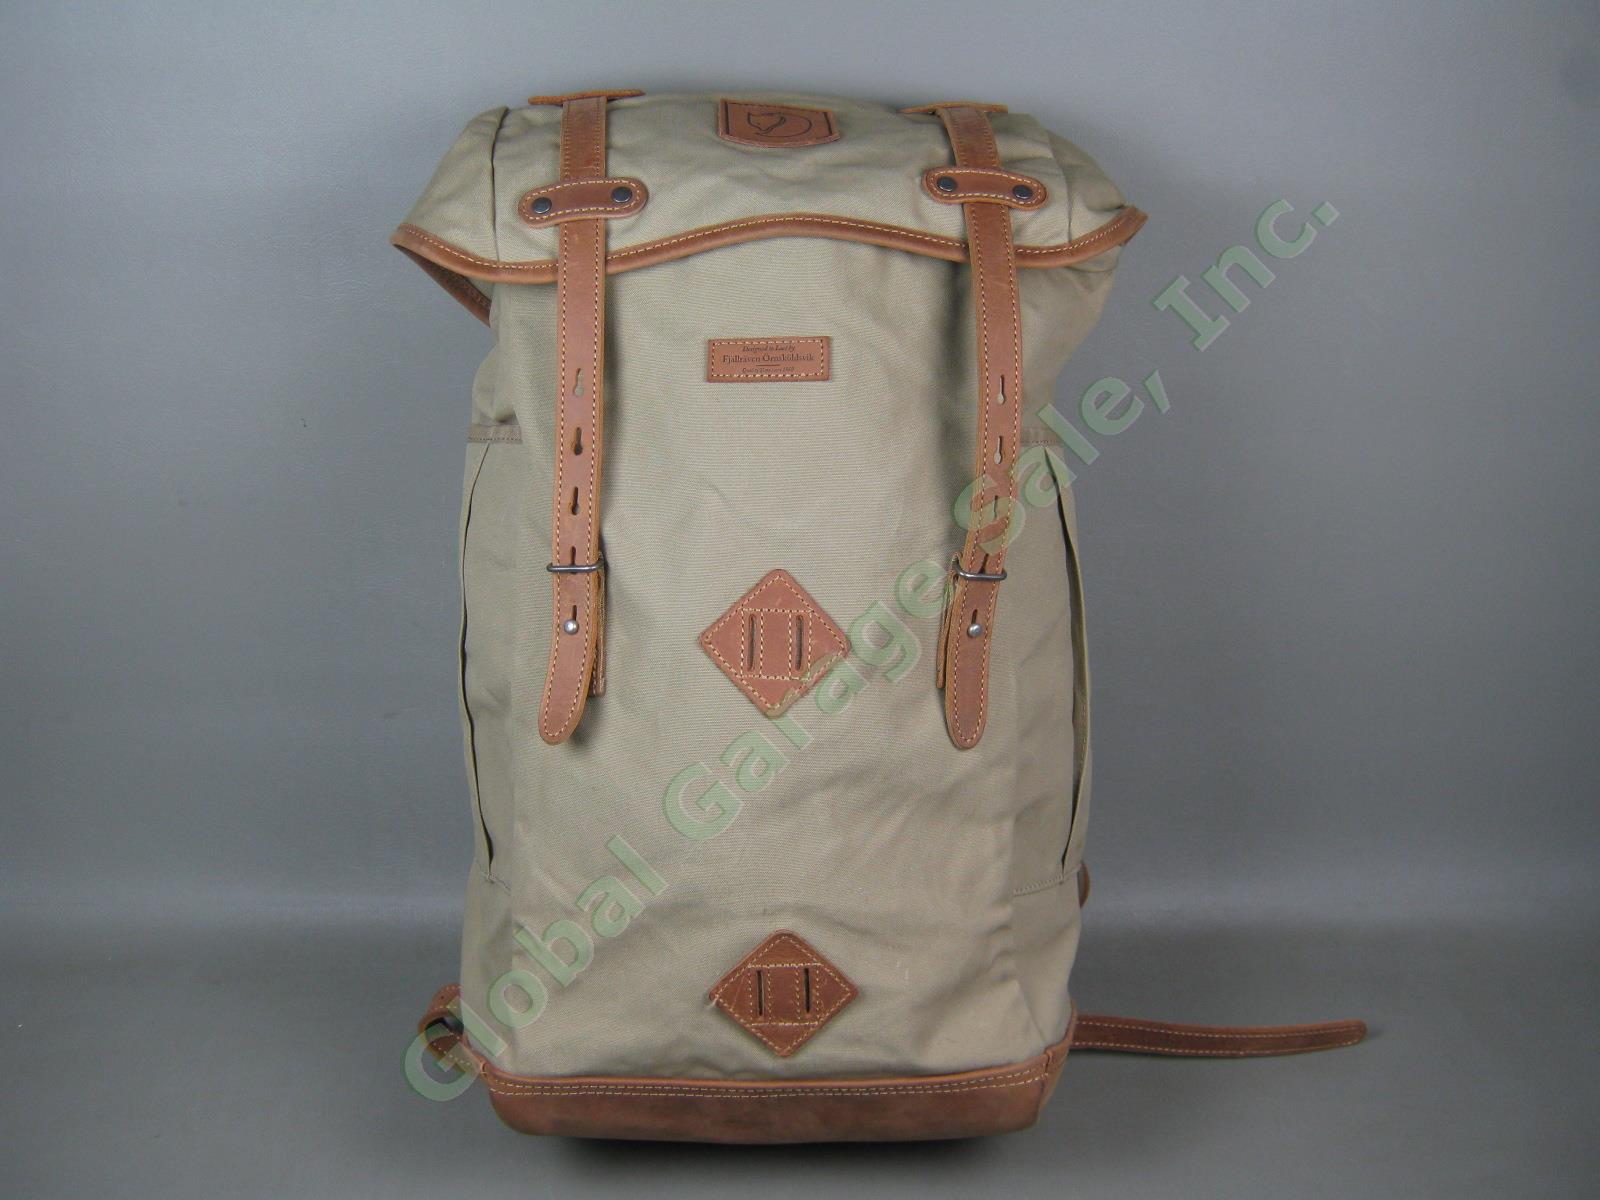 Fjallraven Rucksack No 21 Large Daypack Backpack 24206 Sand Color G-1000 VG COND